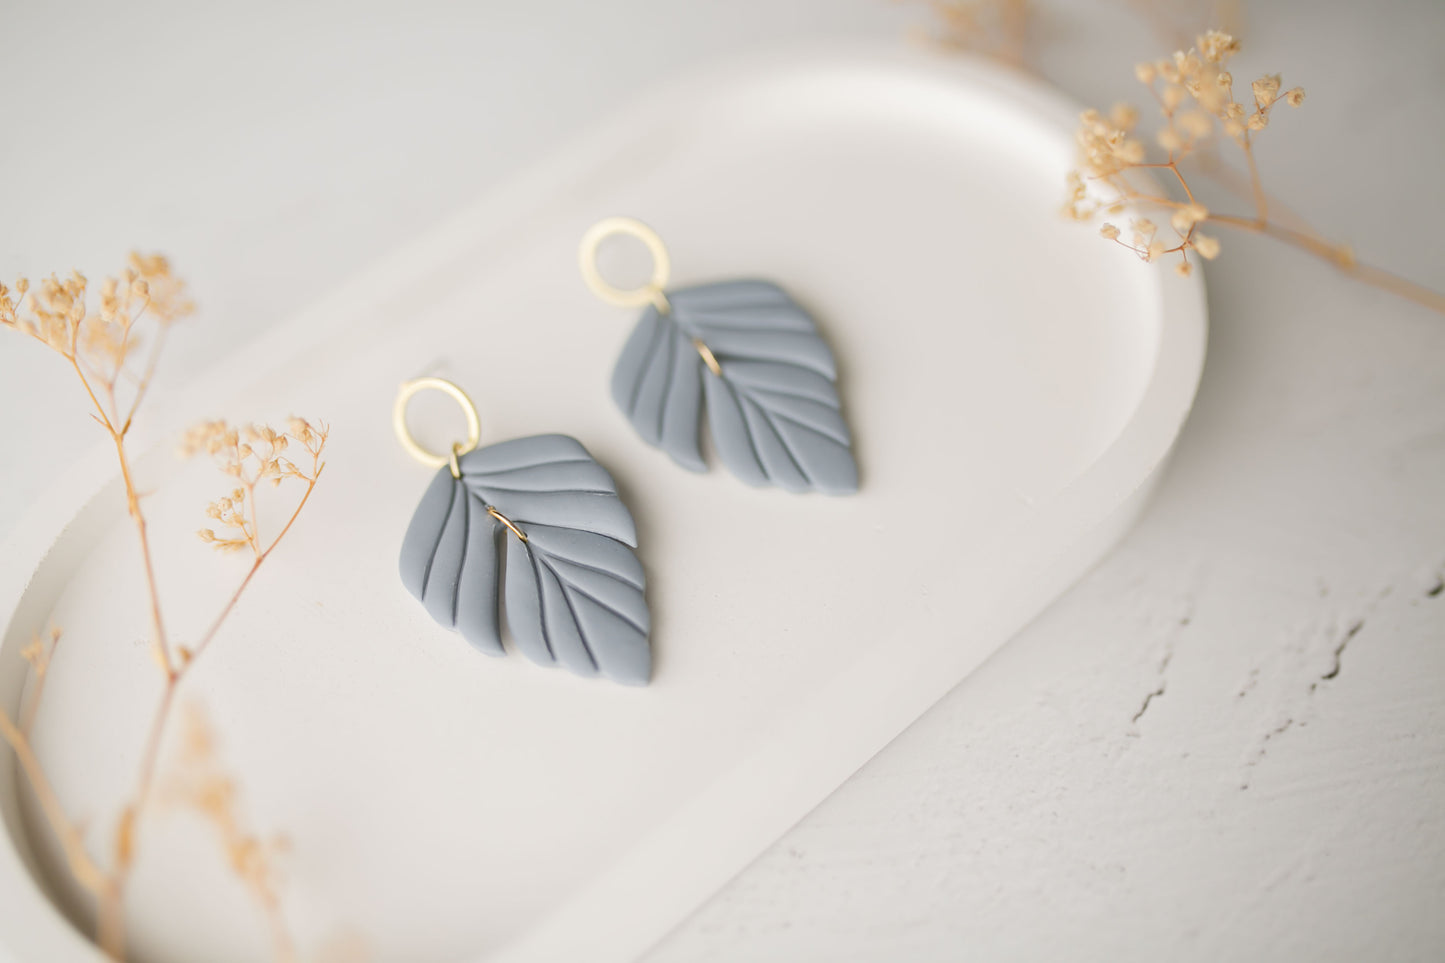 Clay earrings | dusty blue leaves